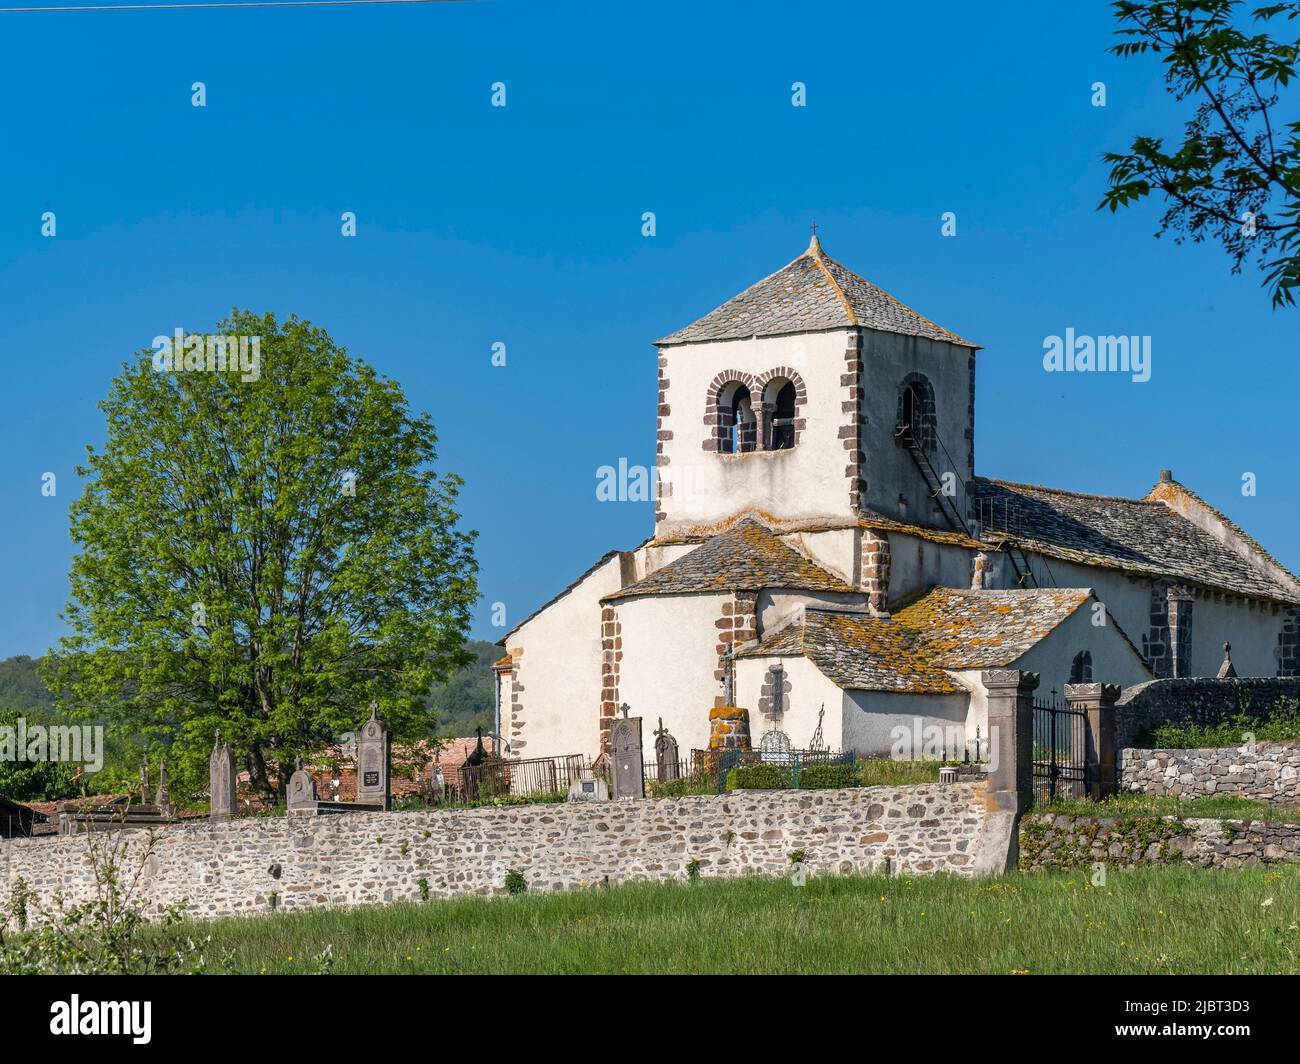 France, Puy de Dome, Vodable, church of Saint-Mary de Colamine sous Vodable, Lembronnais near Issoire Stock Photo